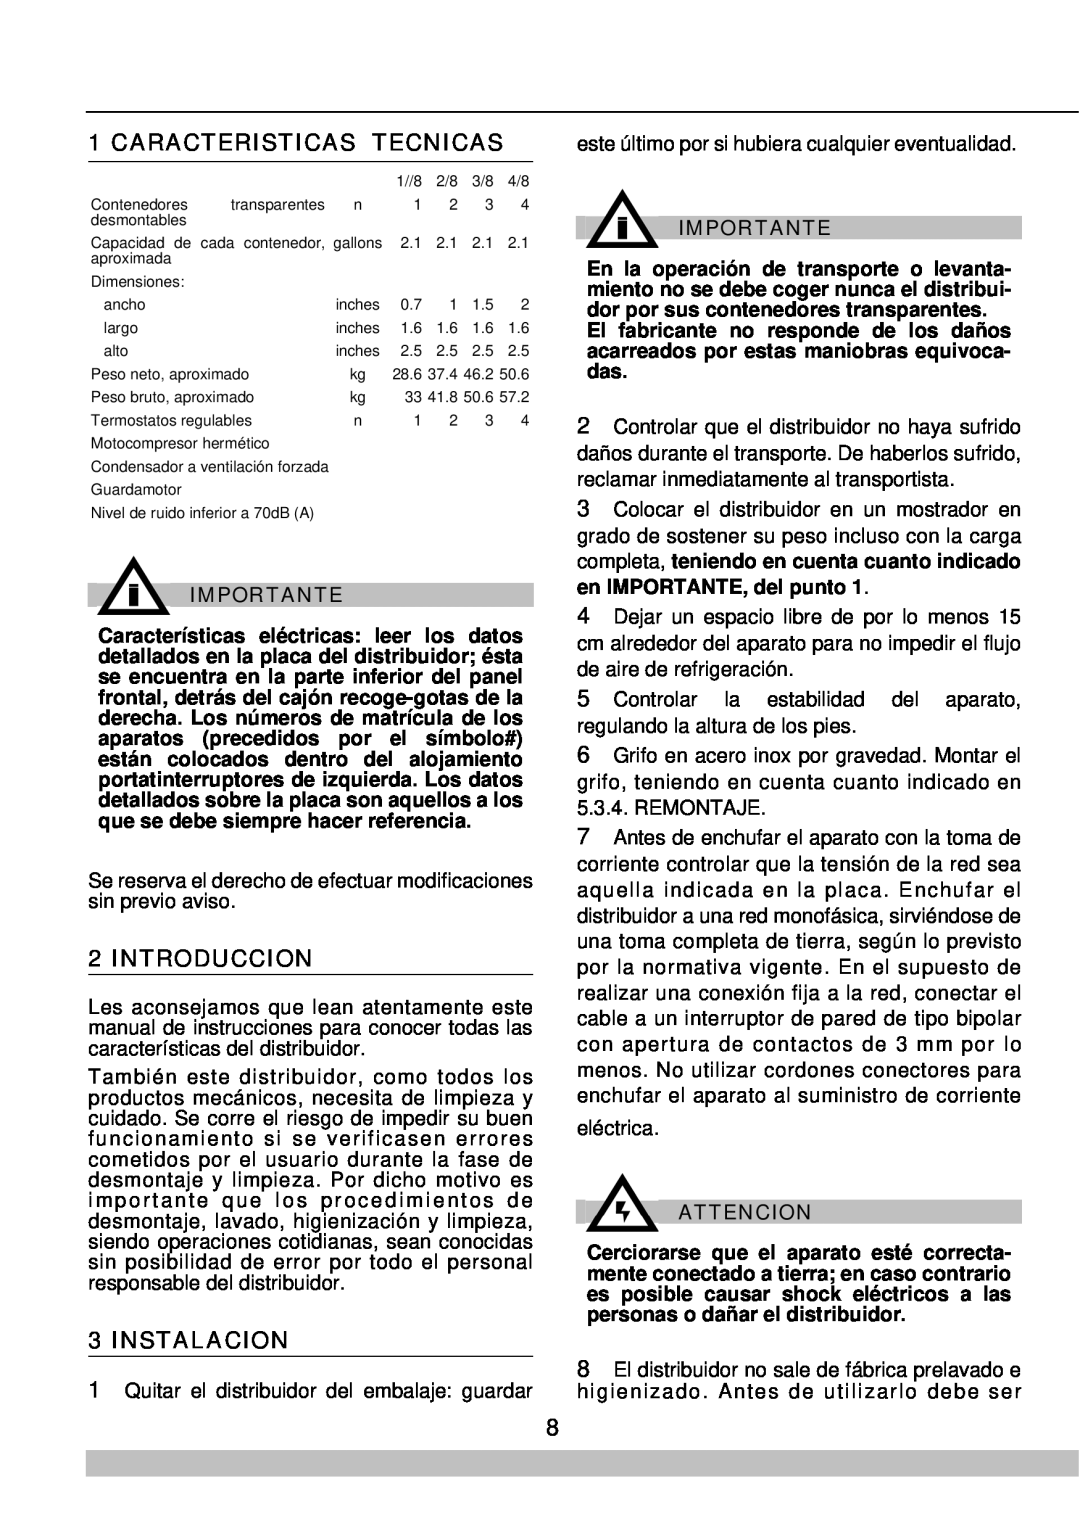 Cecilware 8/1, 8/4 manual Caracteristicas Tecnicas, Introduccion, Instalacion, Importante, Attencion 